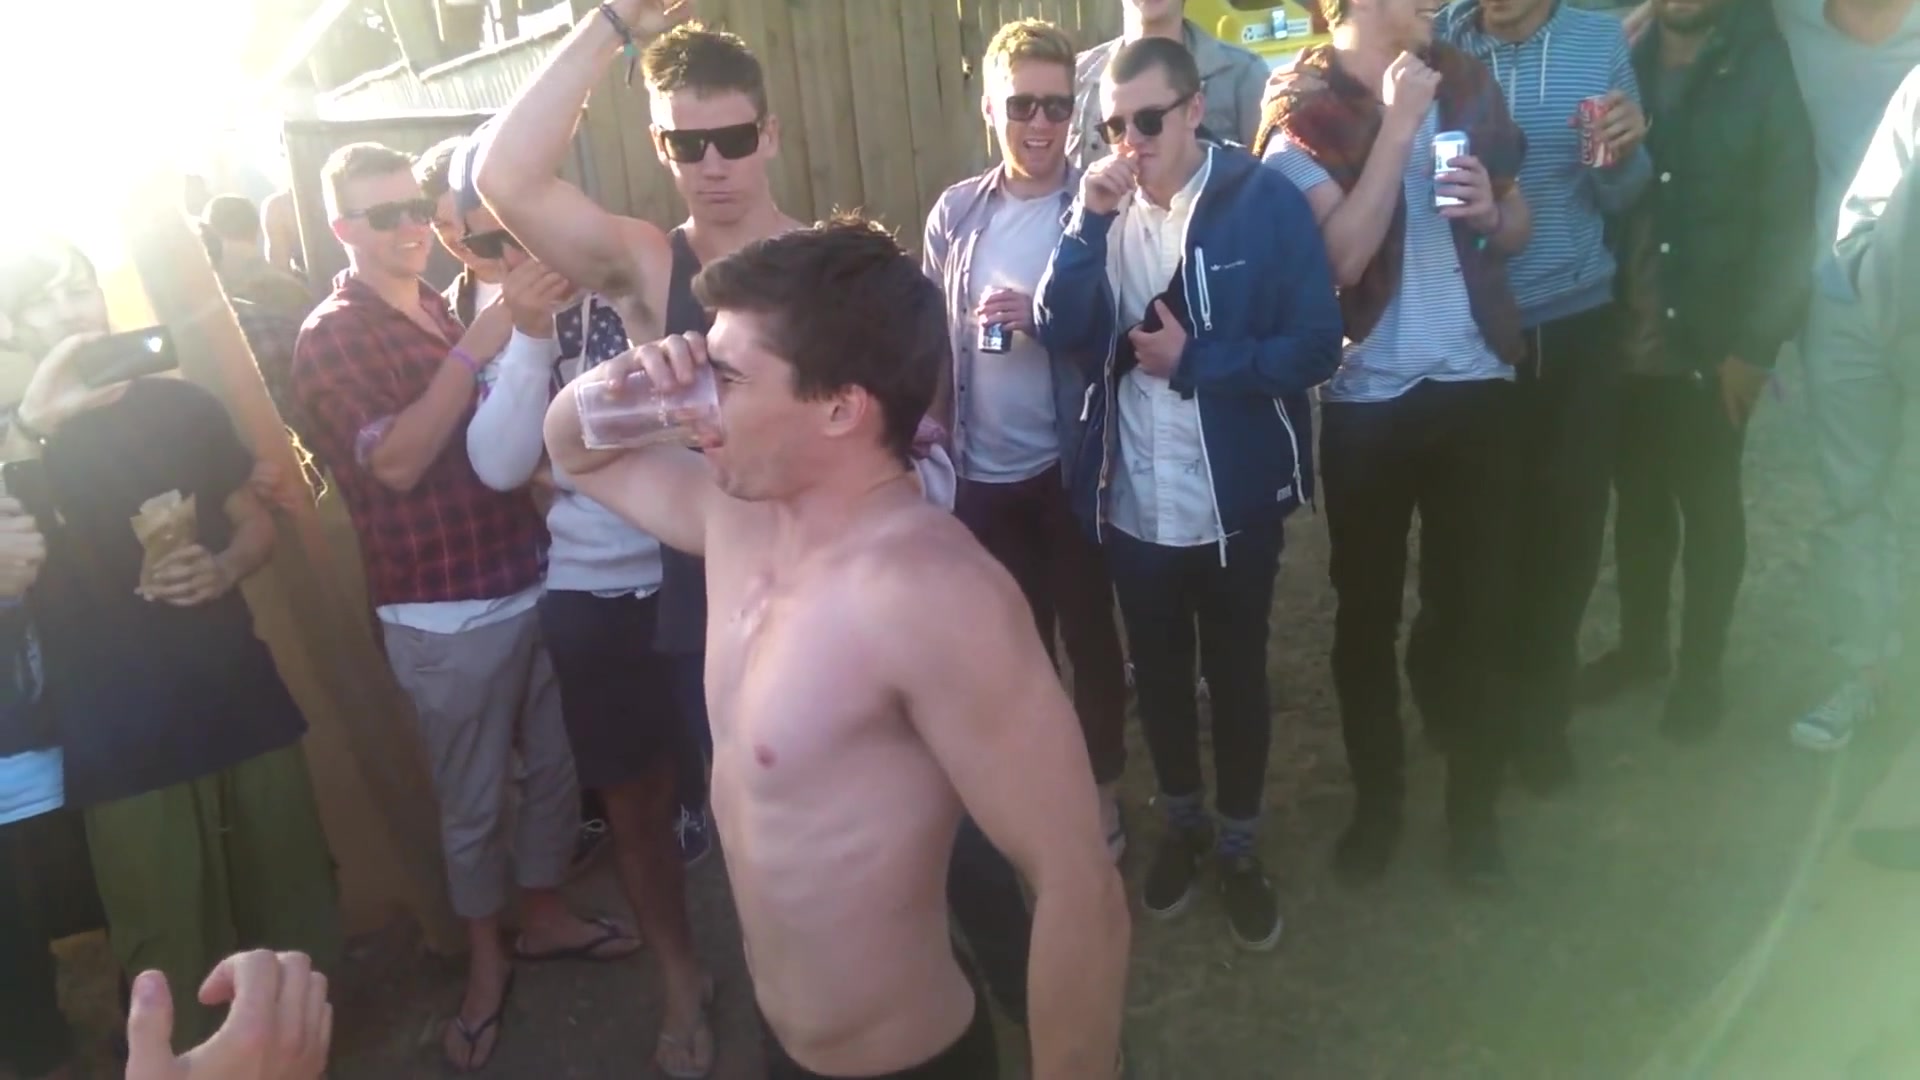 lad drinks pee at festival